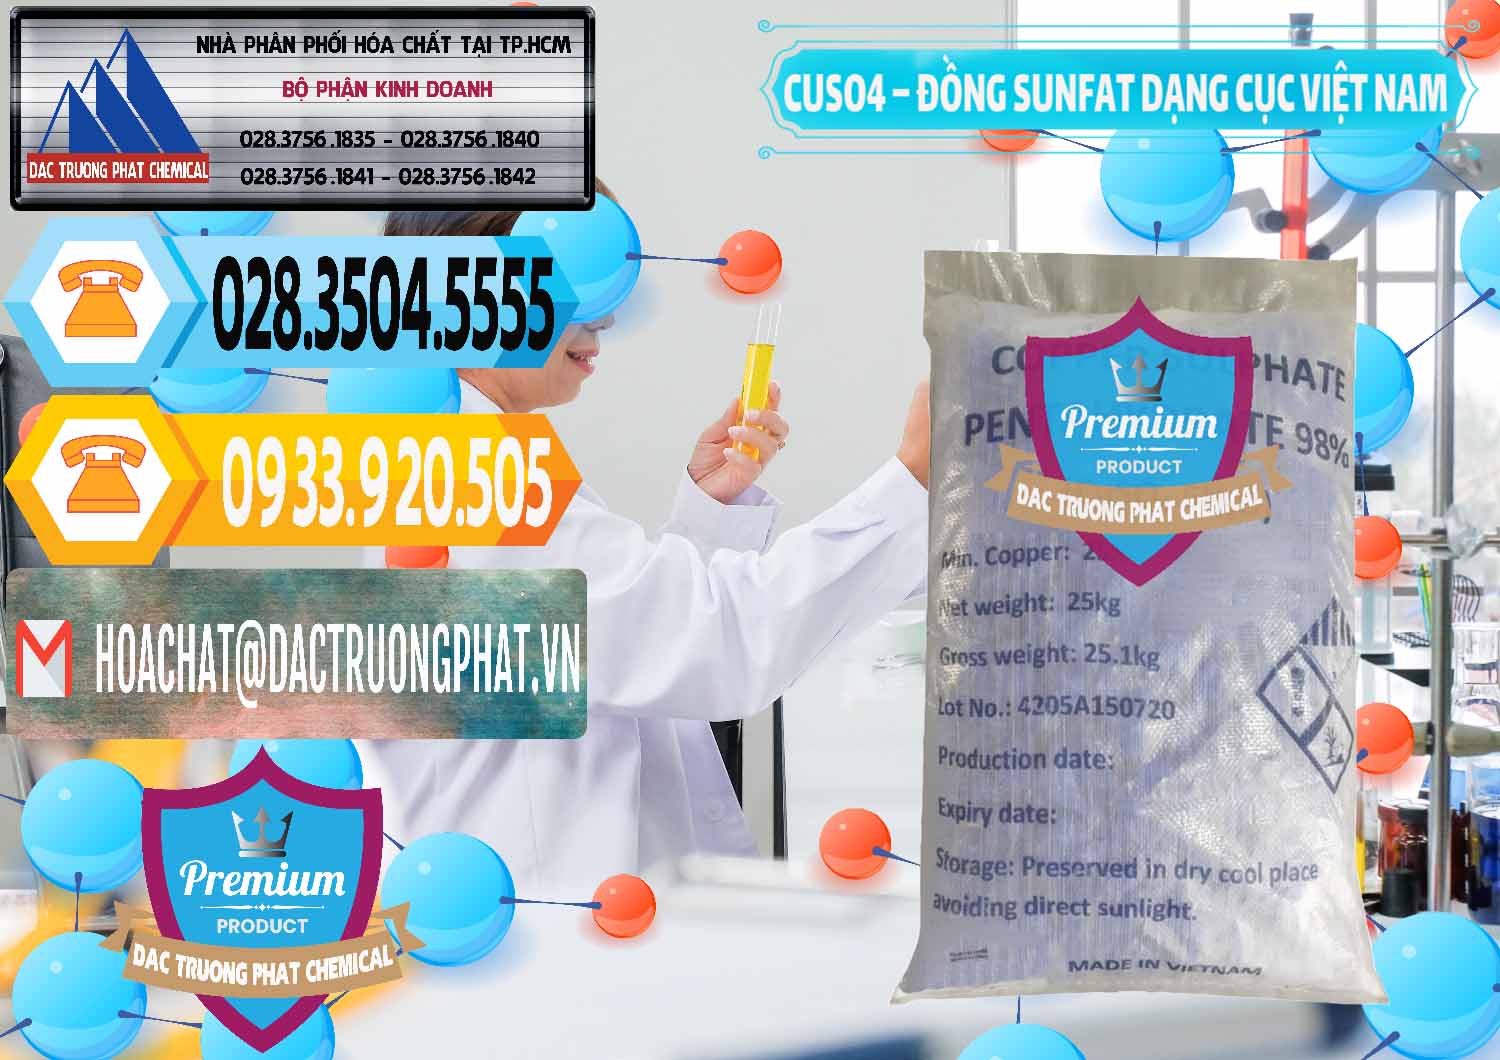 Nhà phân phối & cung cấp CUSO4 – Đồng Sunfat Dạng Cục Việt Nam - 0303 - Công ty chuyên bán _ cung cấp hóa chất tại TP.HCM - hoachattayrua.net